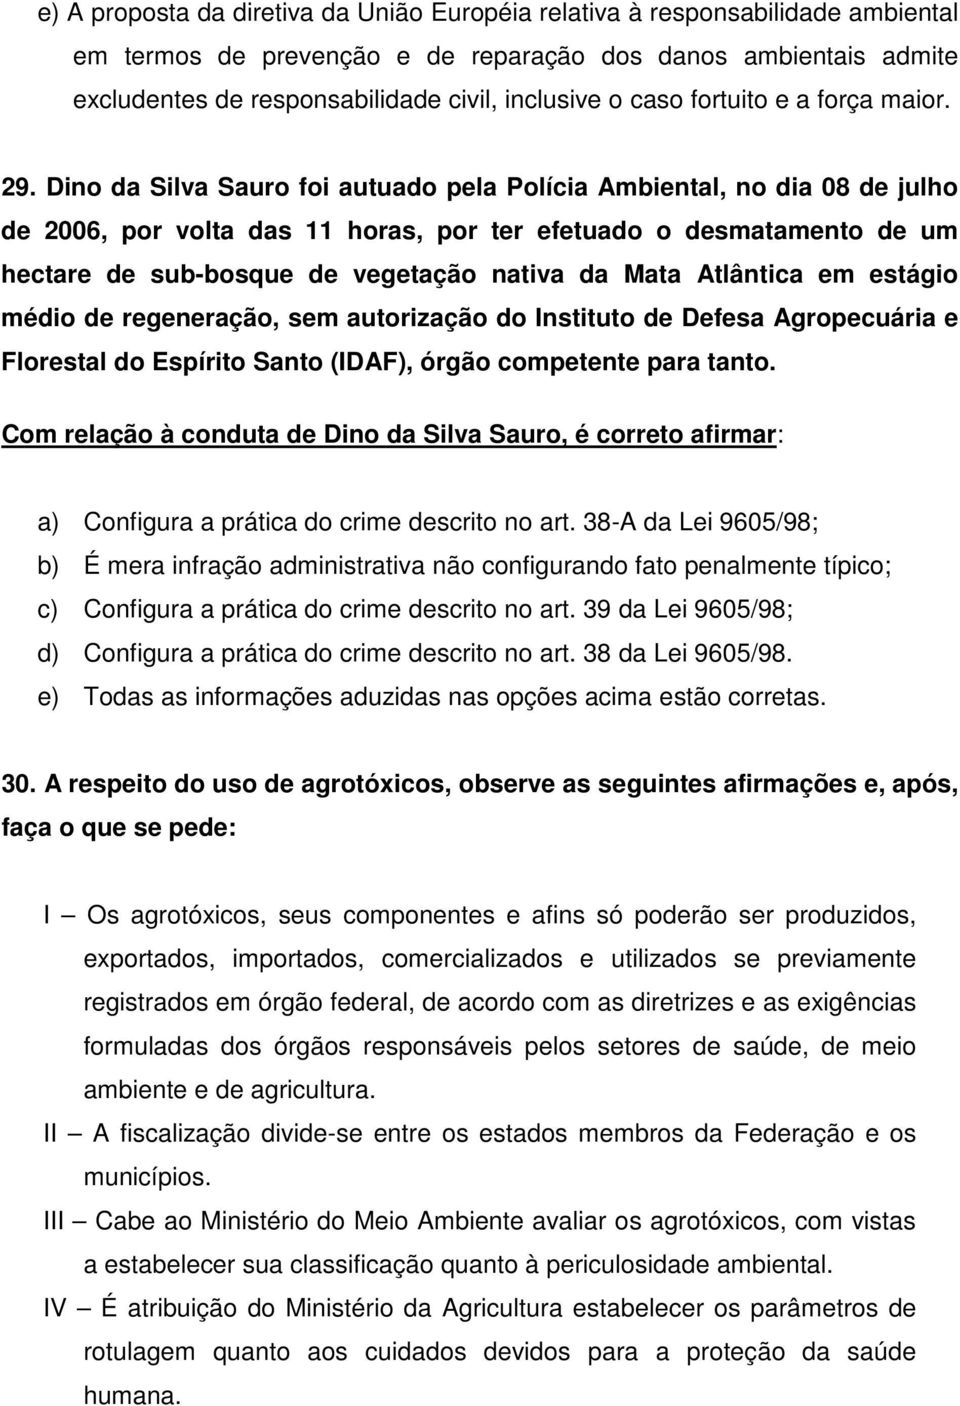 Dino da Silva Sauro foi autuado pela Polícia Ambiental, no dia 08 de julho de 2006, por volta das 11 horas, por ter efetuado o desmatamento de um hectare de sub-bosque de vegetação nativa da Mata